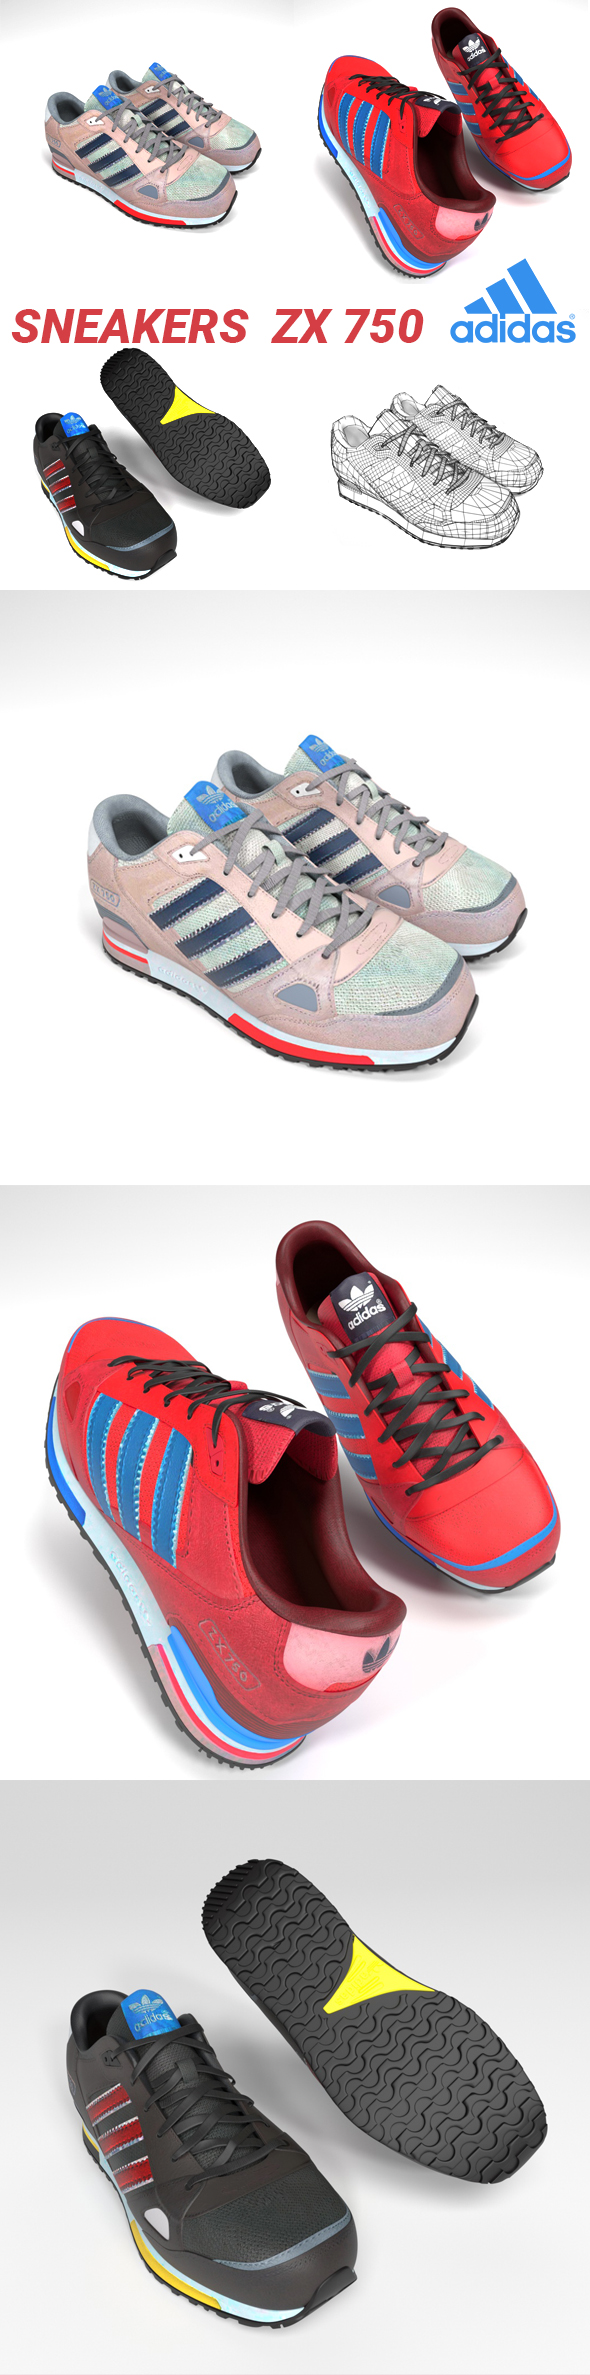 Sneakers Adidas zx - 3Docean 34126132